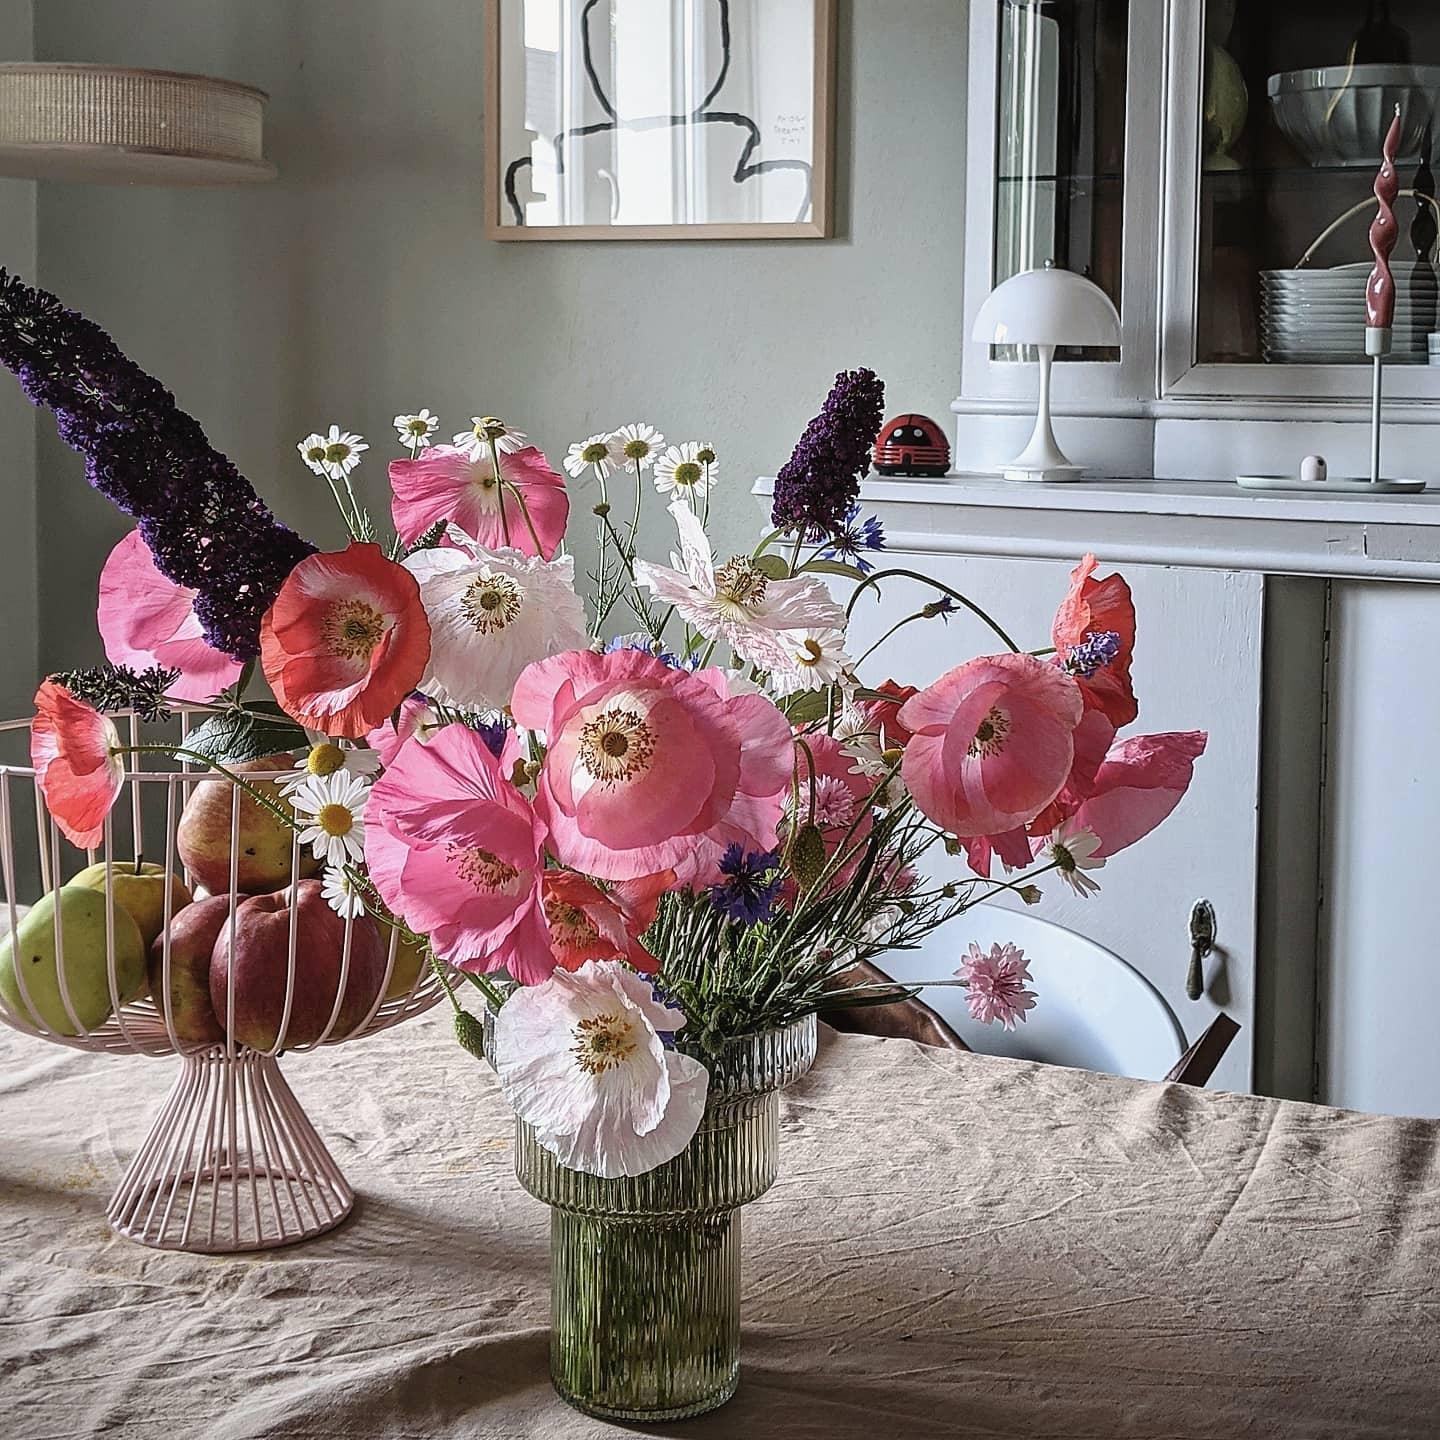 Poppyflowers #couchstyle #esstisch #dinningroo#homestory #altbau #hygge #esszimmer #tischdeko #interiør #interior